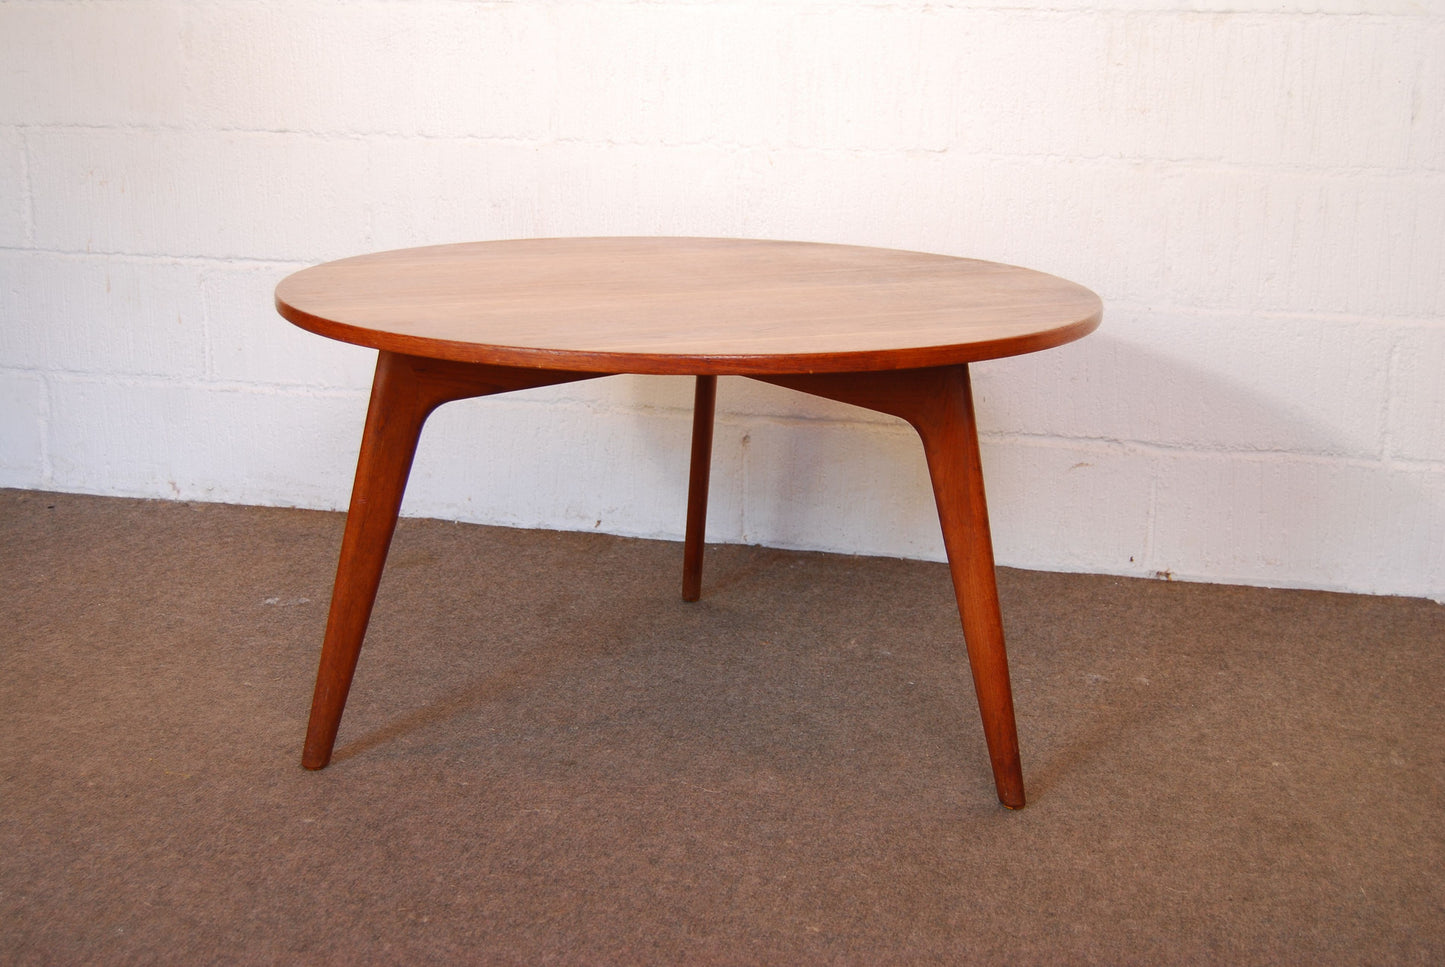 Circular coffee table by Jason MÌübler